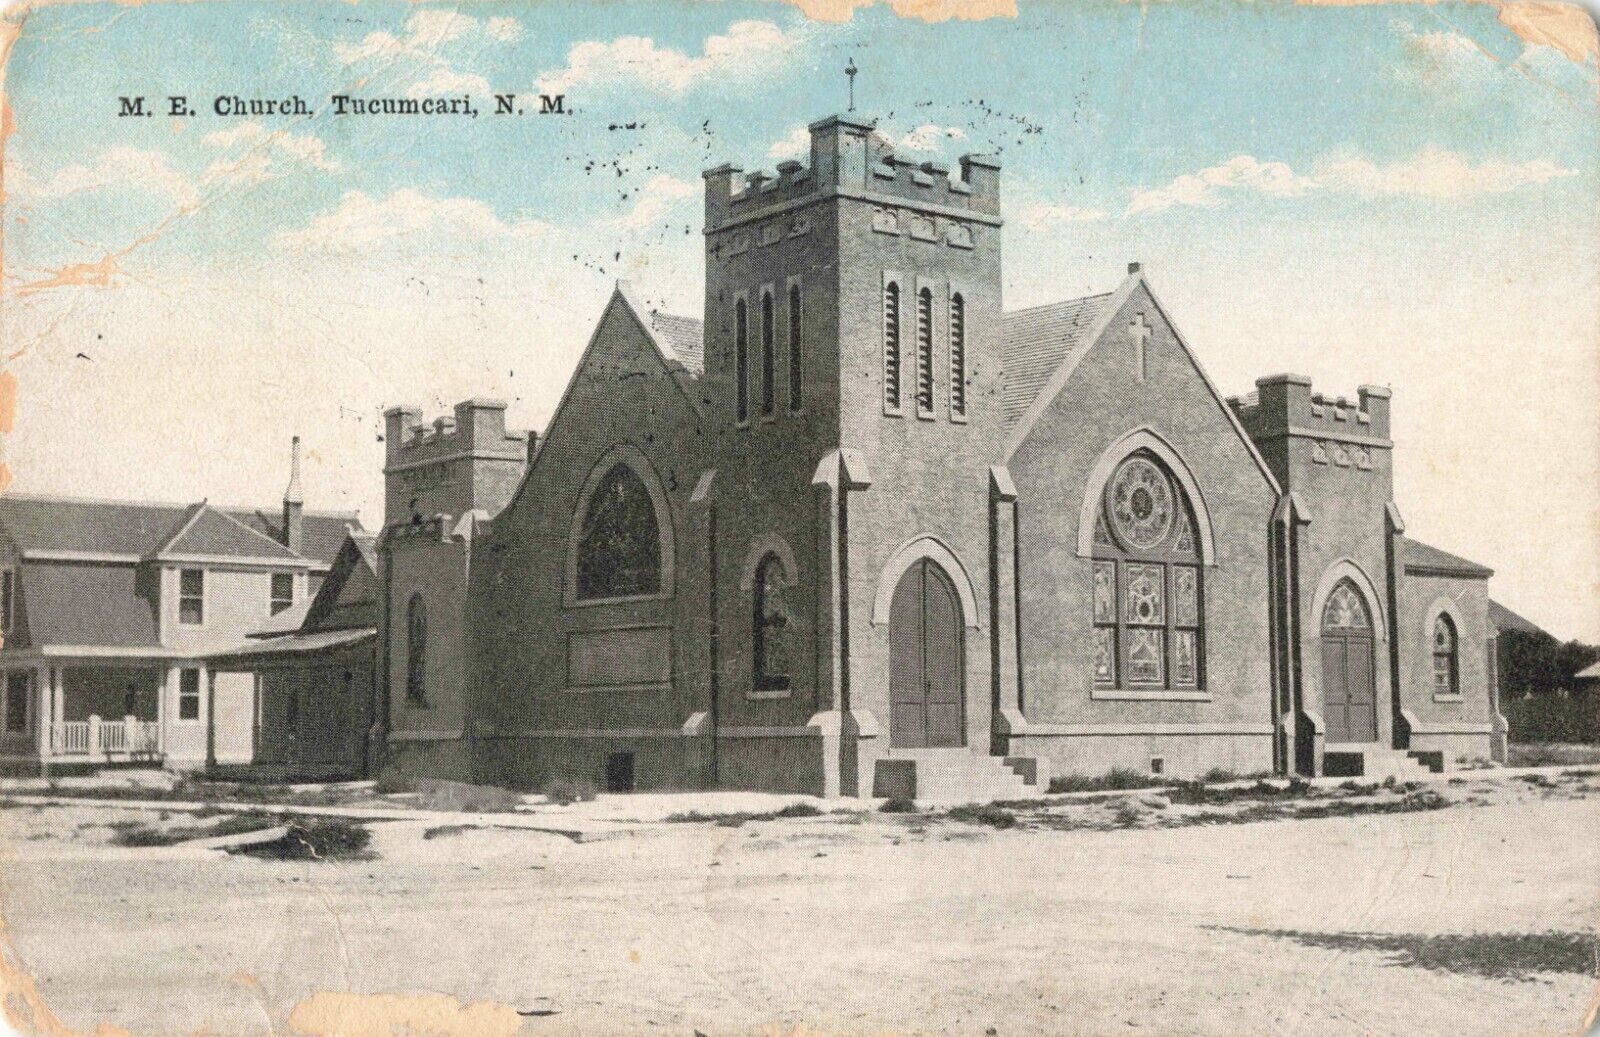 M.E. Church Tucumcari New Mexico NM Methodist Episcopal 1918 Postcard